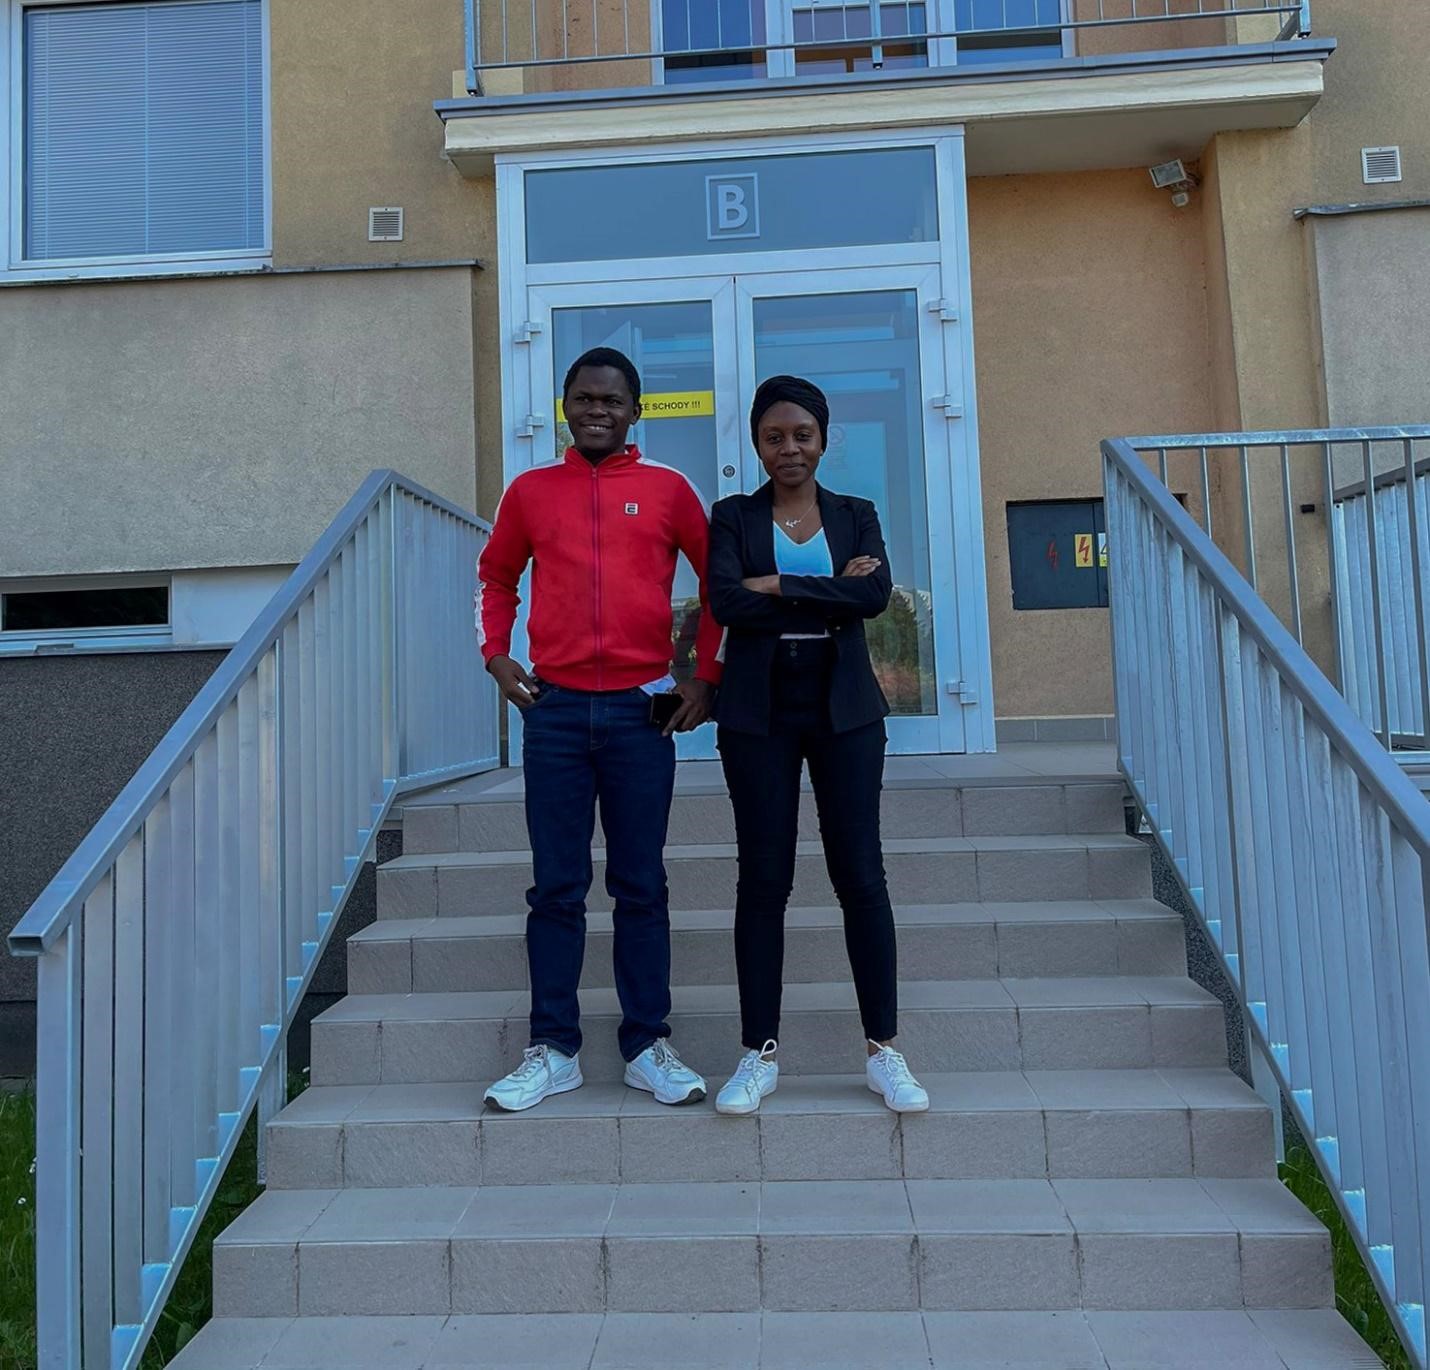 Mr. Mark Amuko and Ms. Kadzo Mwandary at the University of Hradec Králové students’ residence